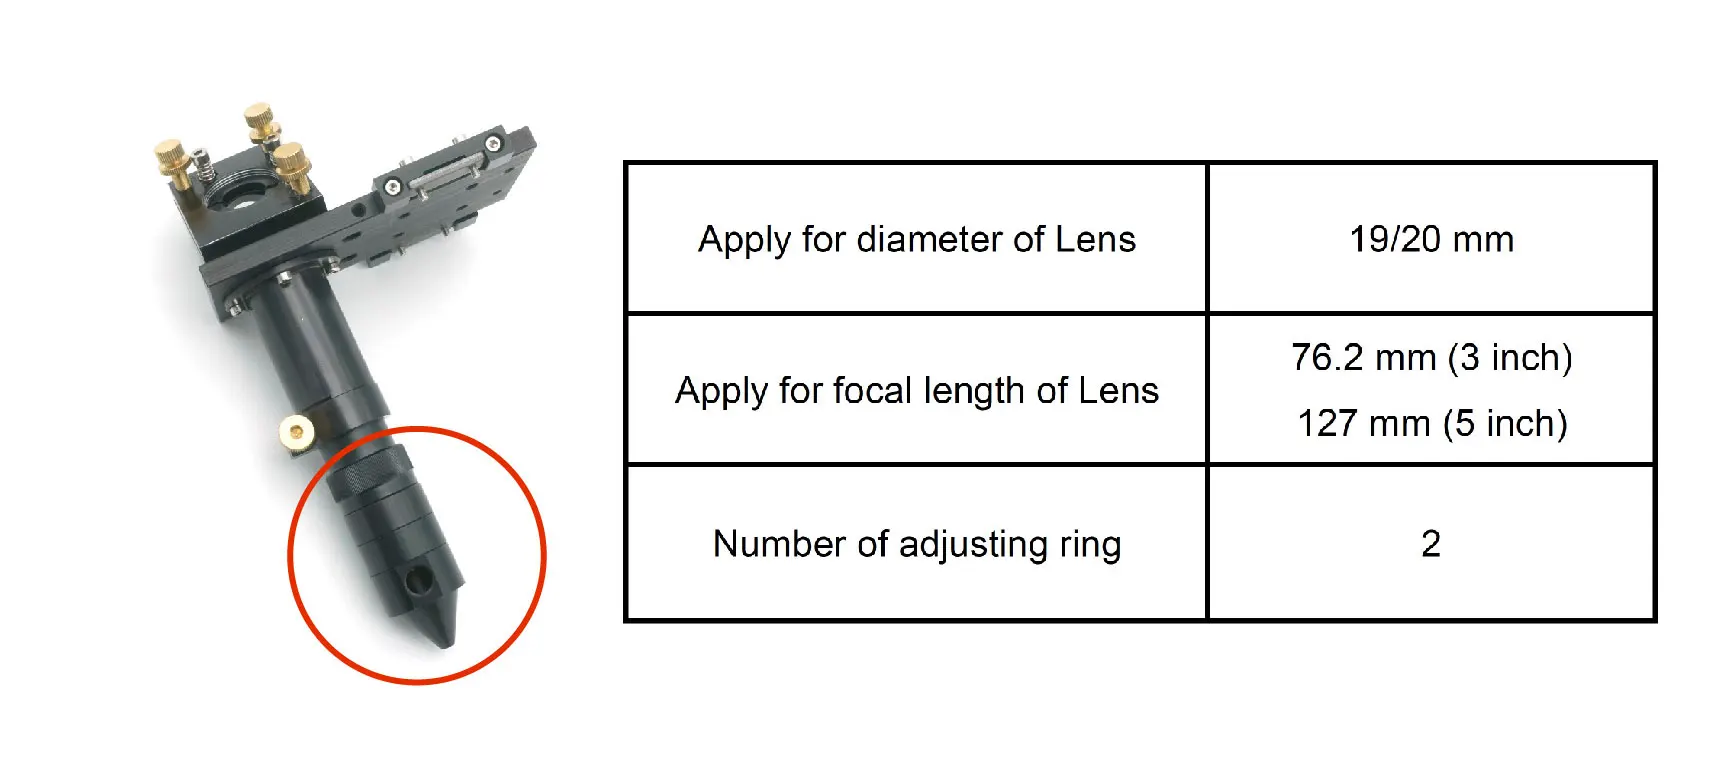 Laser Hoved for at Fokusere Objektivet Dia. 19 & 20 mm FL127mm Spejl 25mm Mount til Laser Gravering skæremaskine